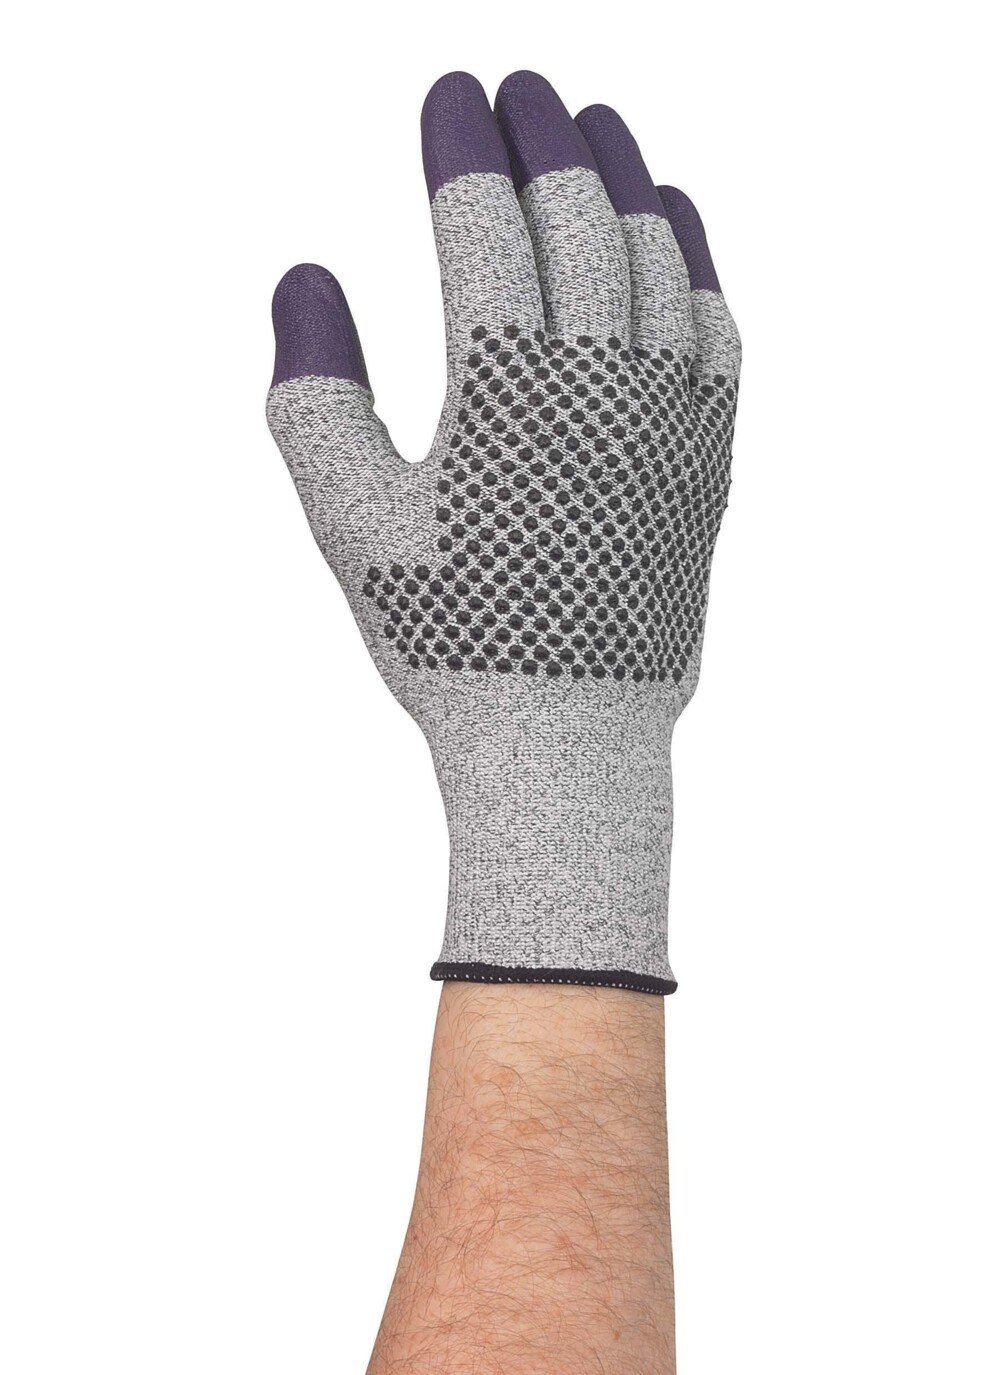 Gants KleenGuard® G60 Endurapro™ Dual Grip™ Purple Nitrile 97431 - Gris et violet, taille 8, 1 x 12 (12 gants) - 97431